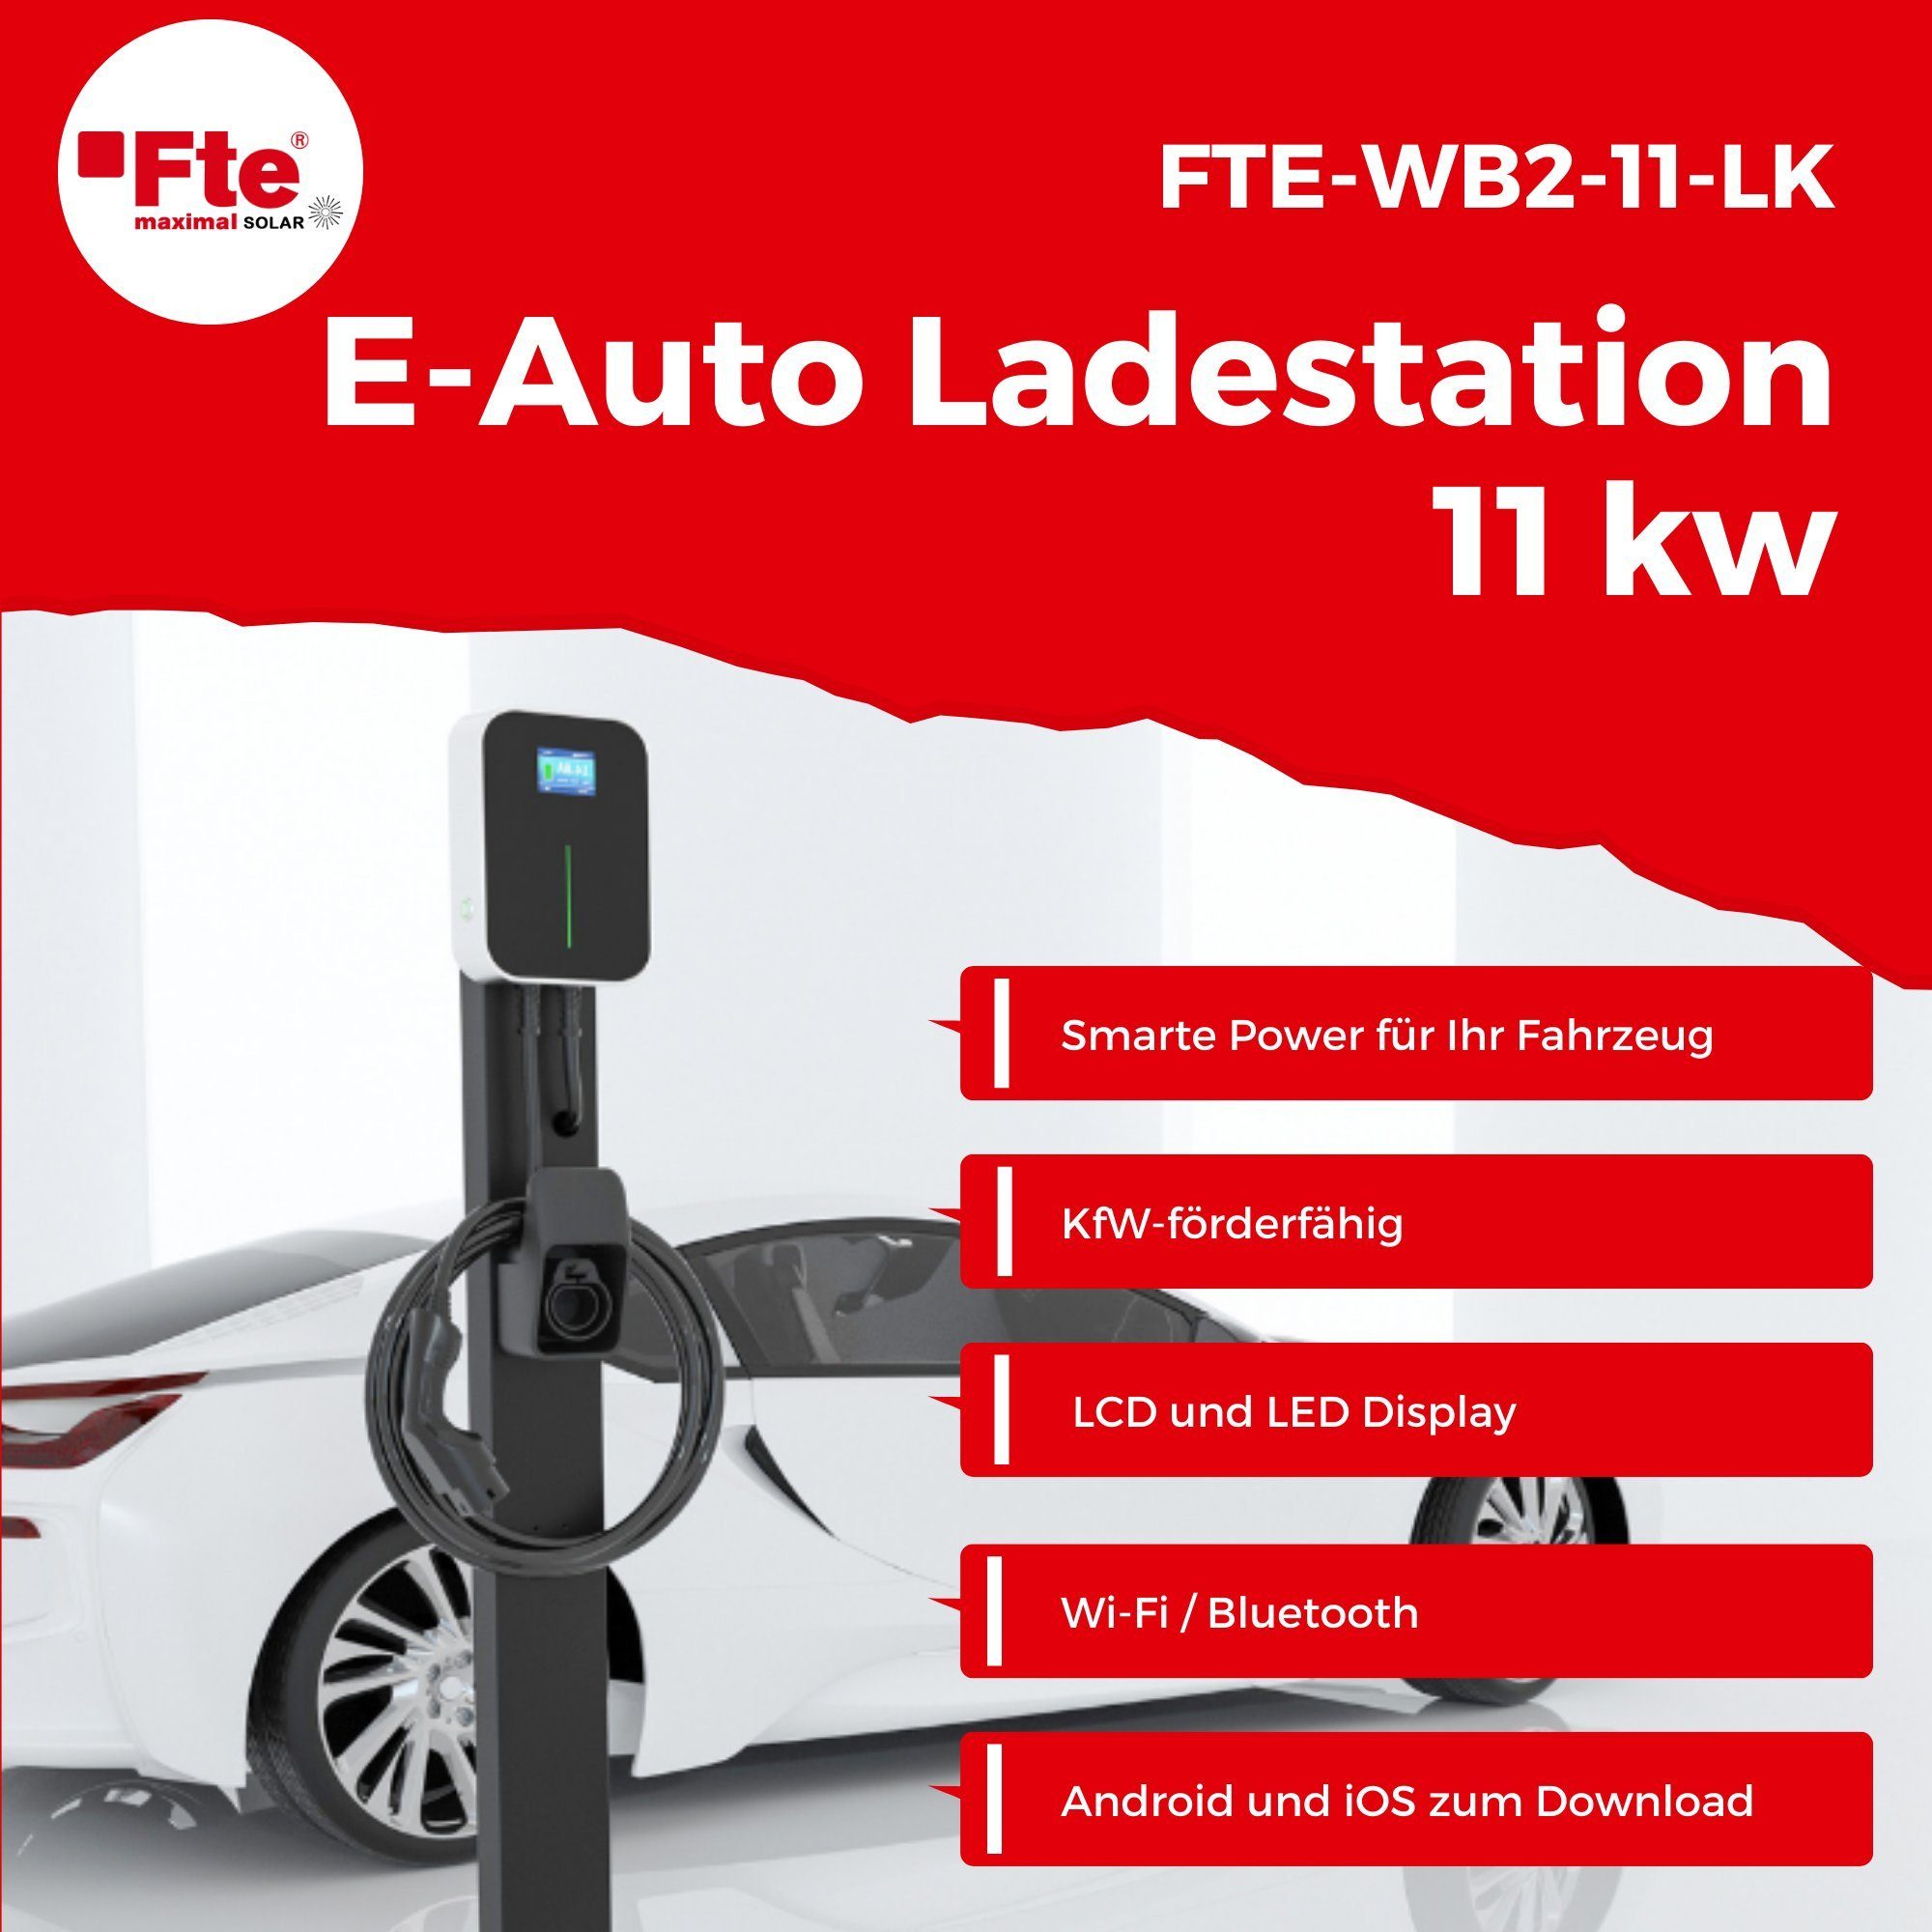 / m kW, Ladestation FTE 16A, 11,00kW Fte-WB2-11-LK Kabel, stationär Elektroauto-Ladestation 3-phasig, 6 App, 1-St. 11